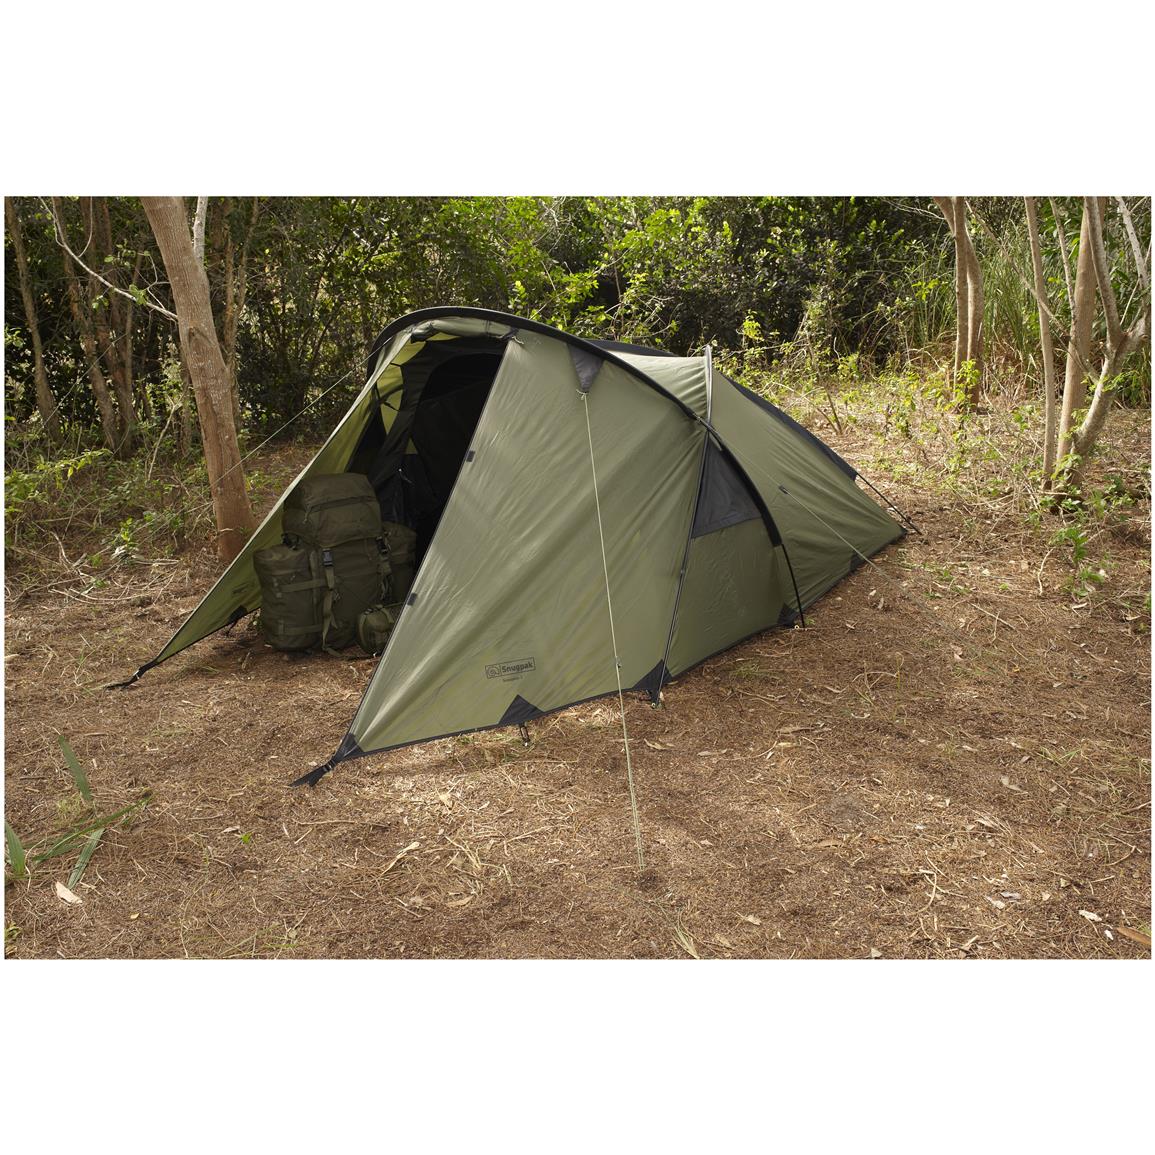 Snugpak® Scorpion 3™ Tactical Shelter Tent - 302550, Popup Tents at